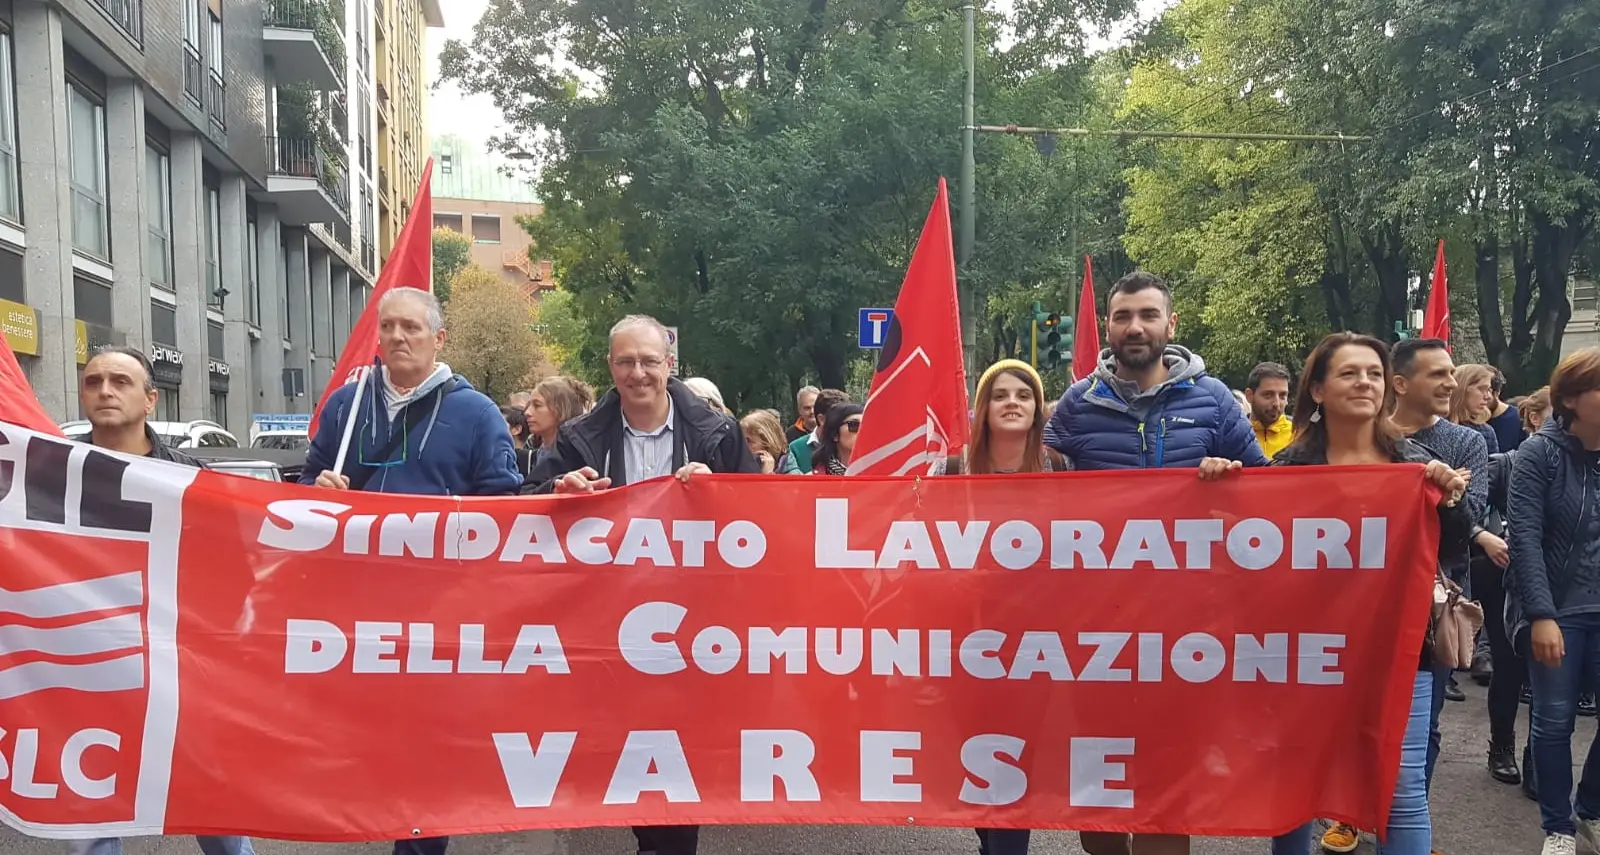 Grafici editoriali: Pellizzaro (Slc Varese), tanti motivi per scioperare